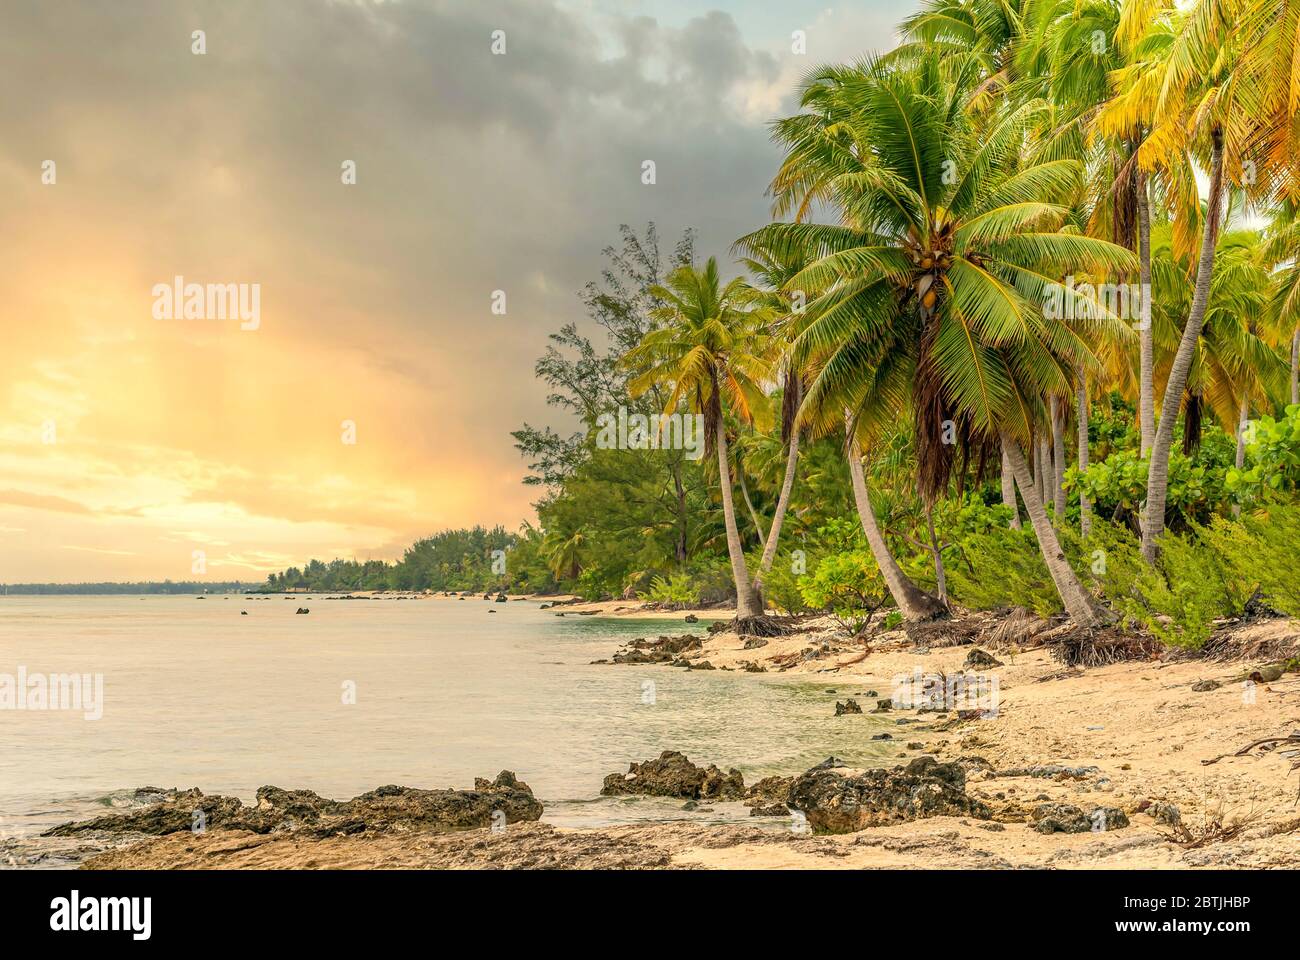 Playa de palmeras tropicales en la isla Tuamotu al atardecer, Polinesia Francesa Foto de stock